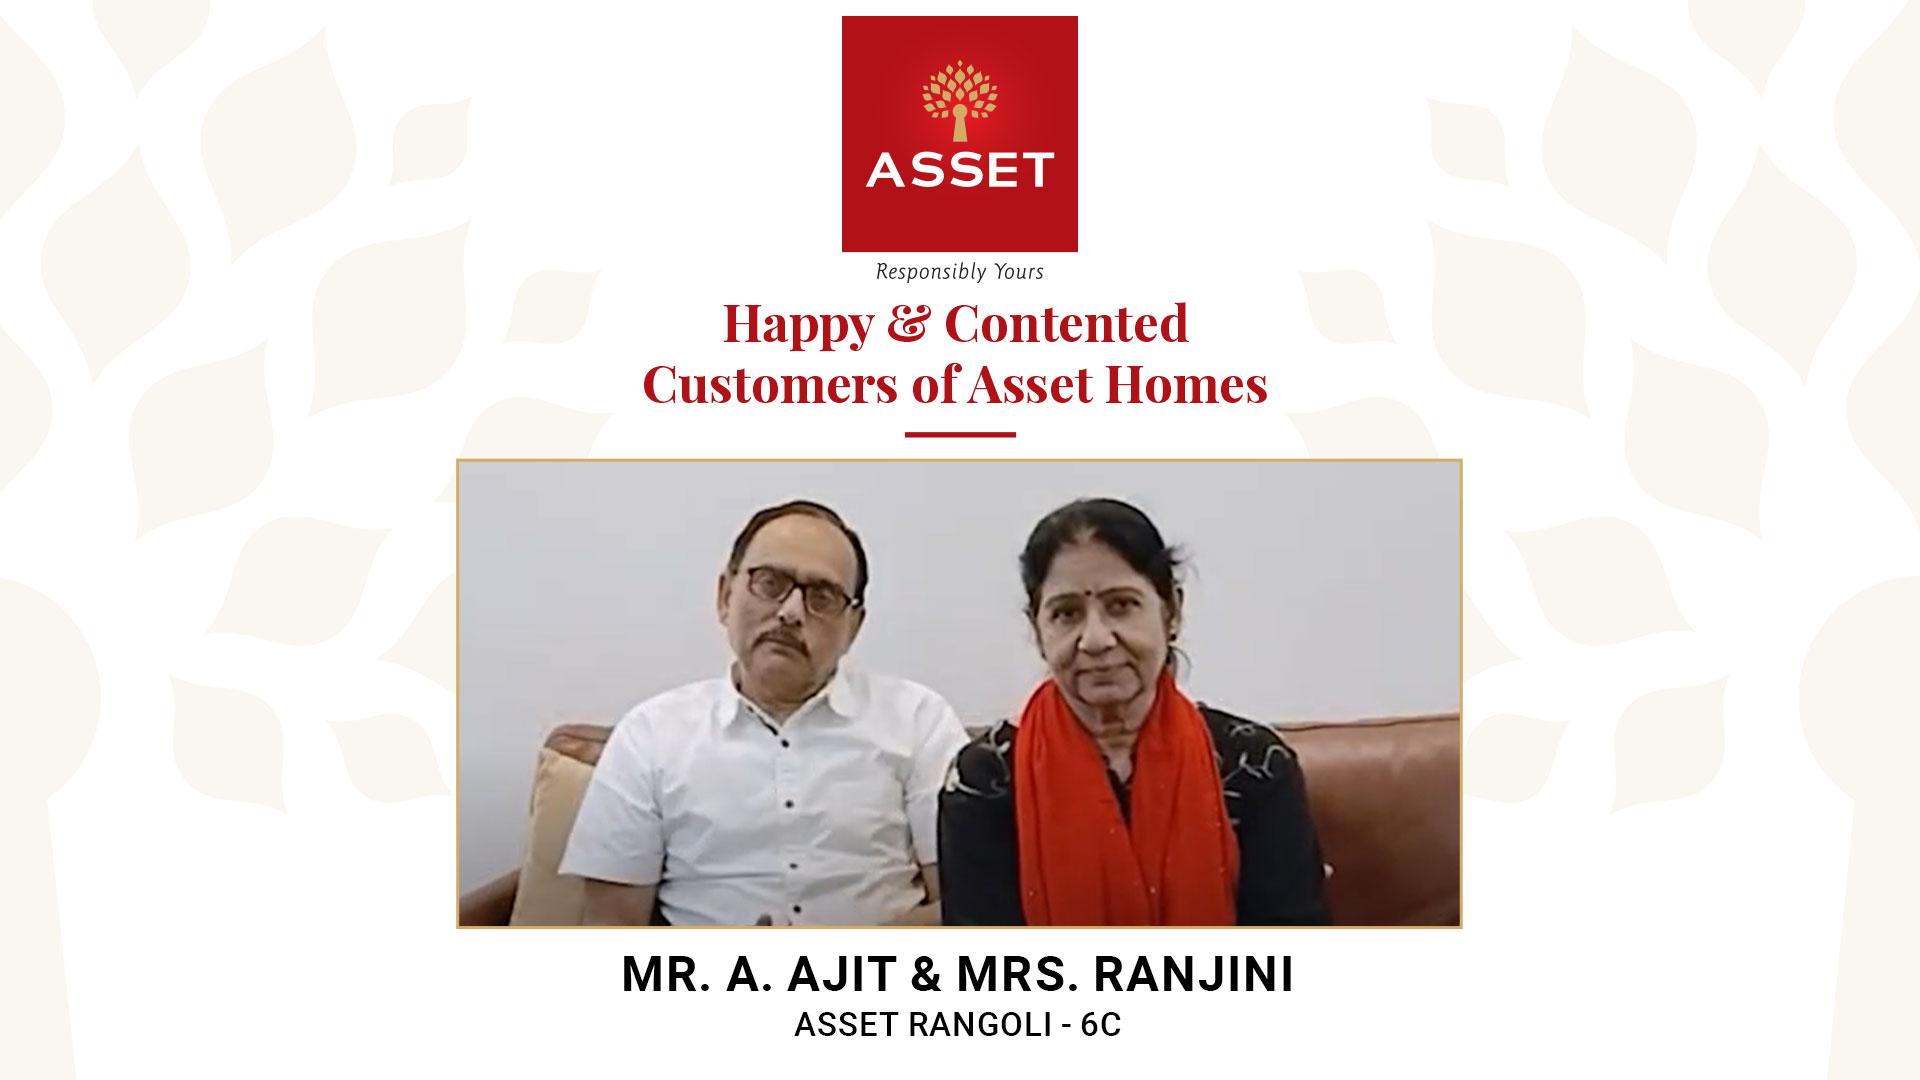 Mr. A. Ajit & Mrs. Ranjini, Asset Rangoli – 6C